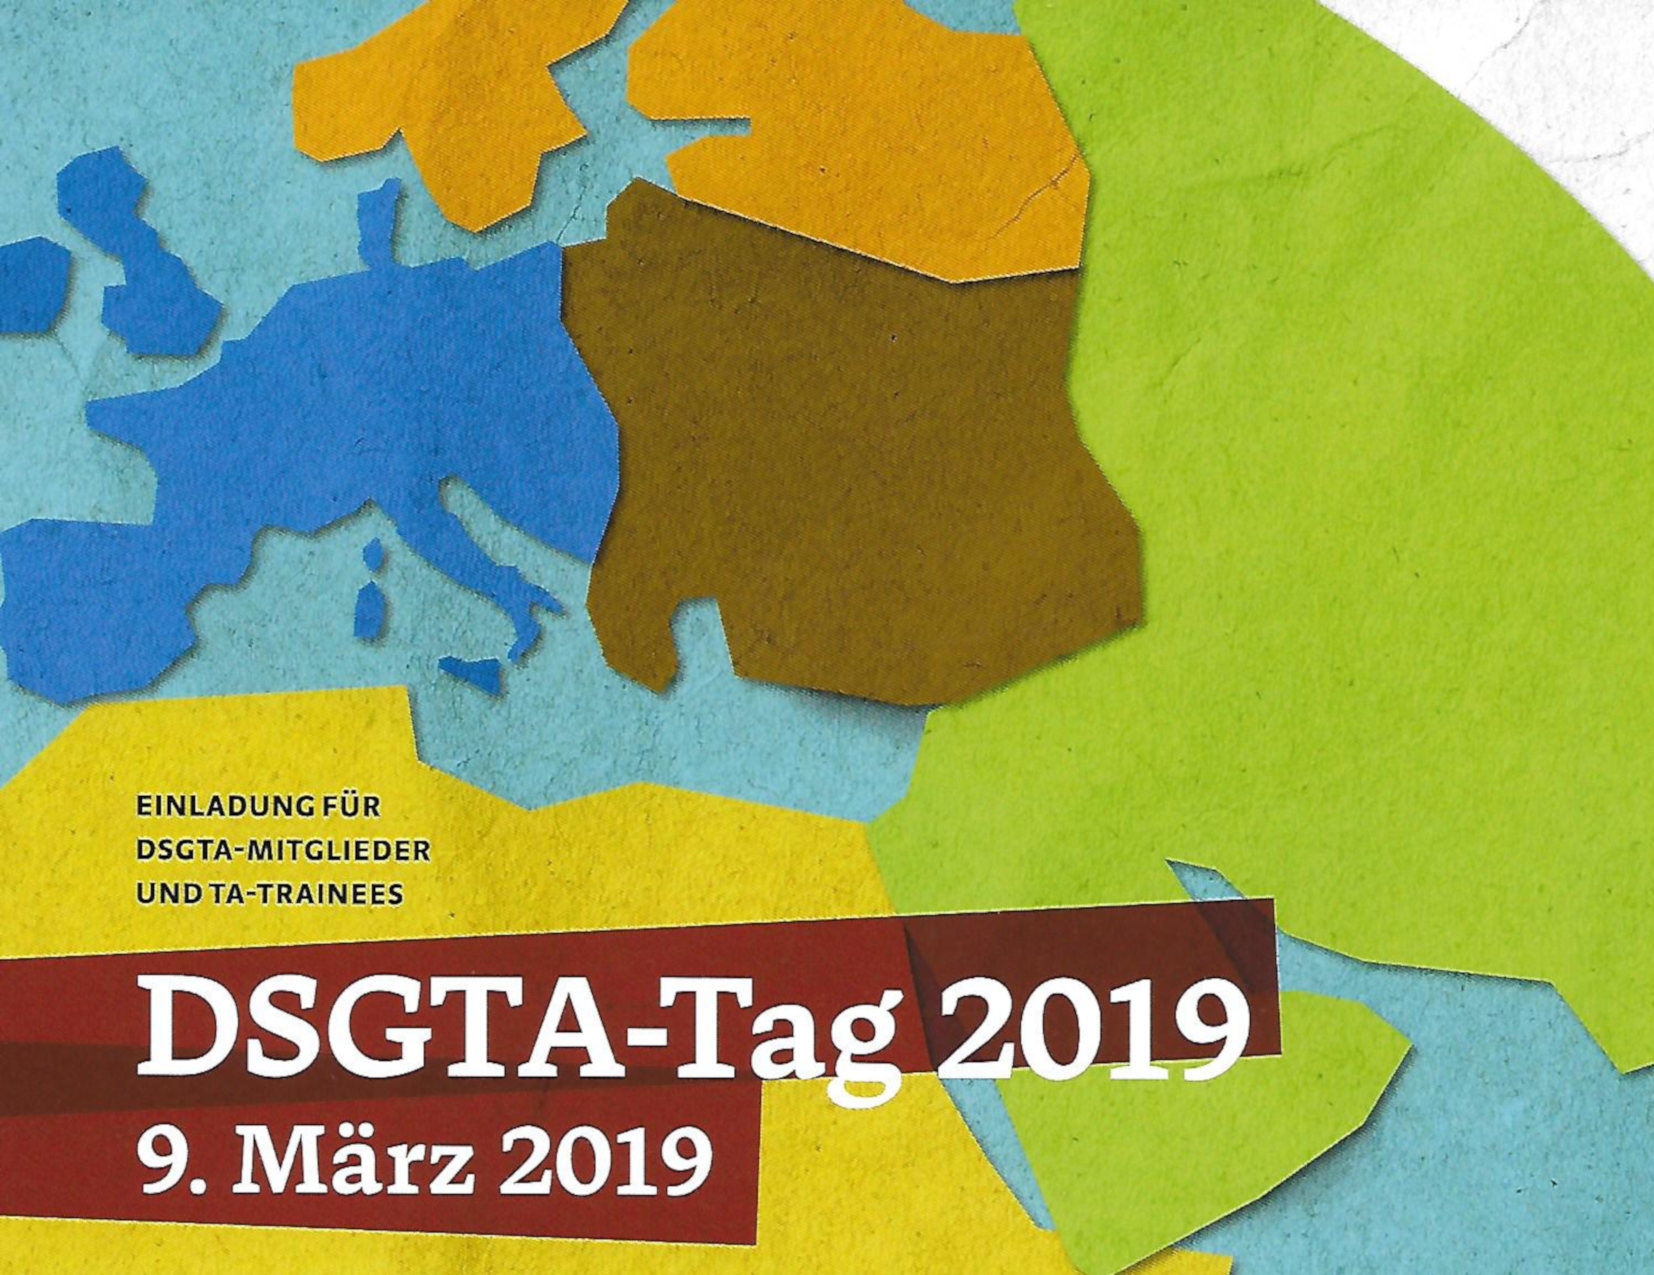 DSGTA-Tag 2019